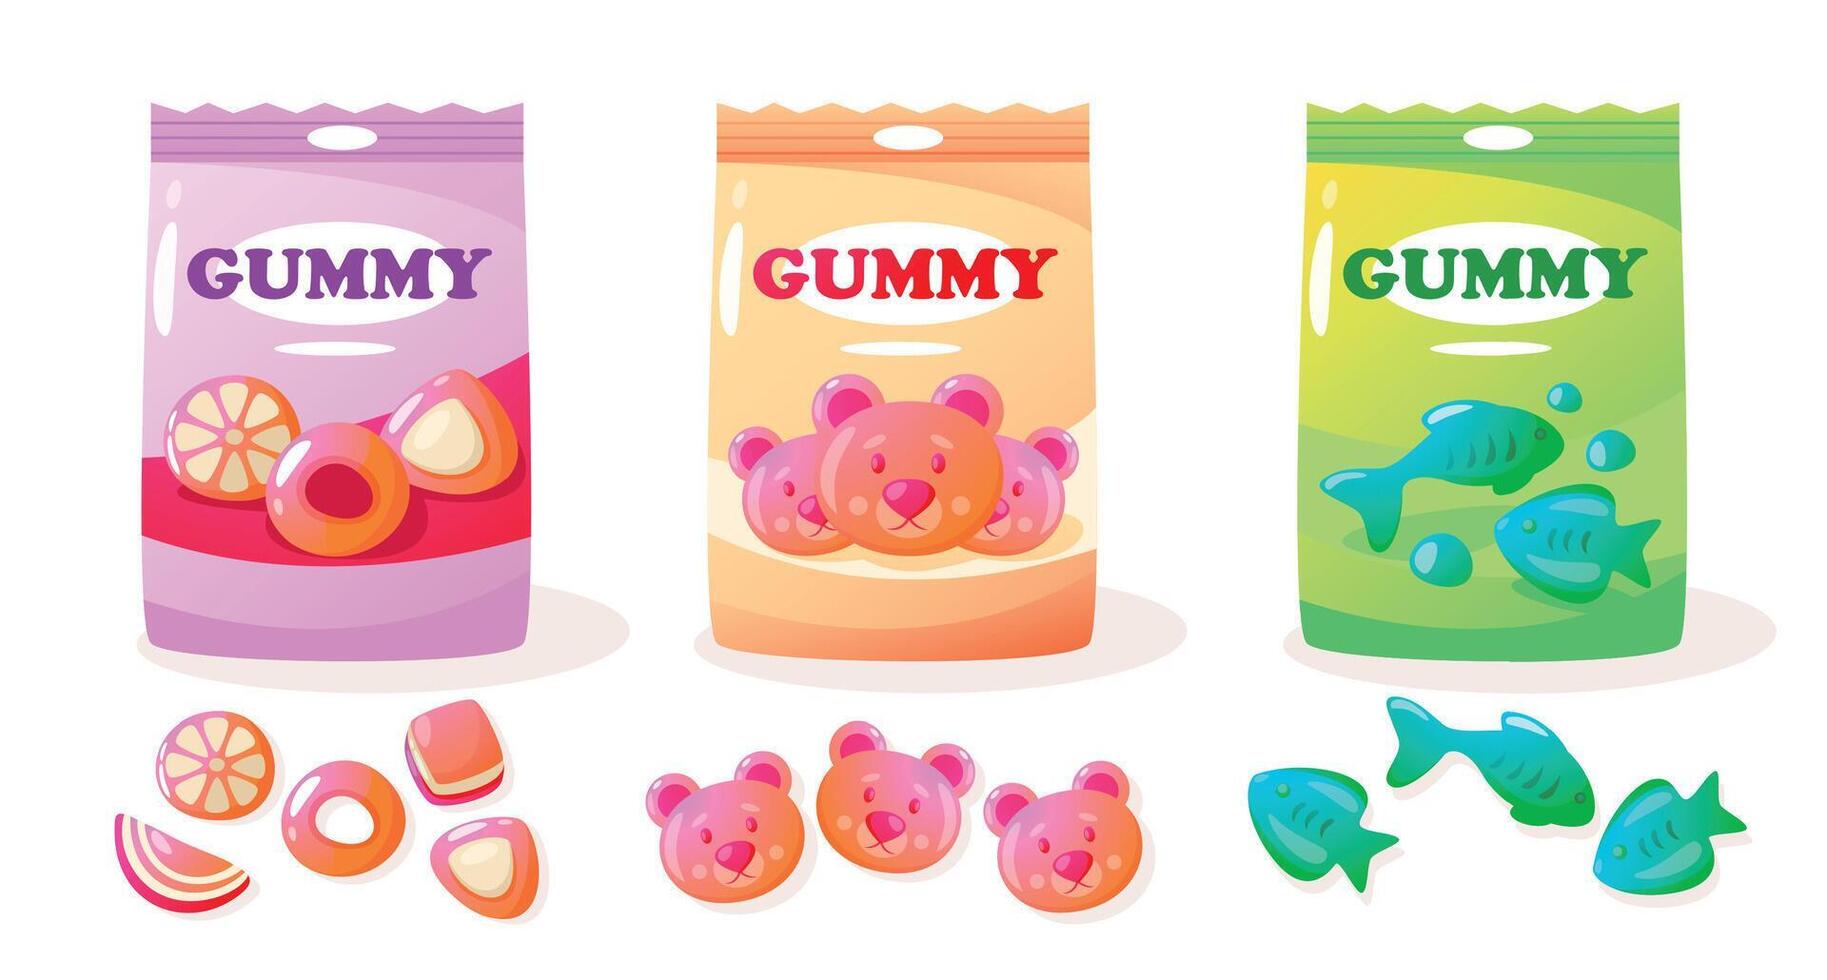 gelé gummi packa. tecknad serie färgrik ljuv klibbig björnar, olika sortiment av färgrik ljuv frukt mellanmål för ungar. vektor färgrik uppsättning